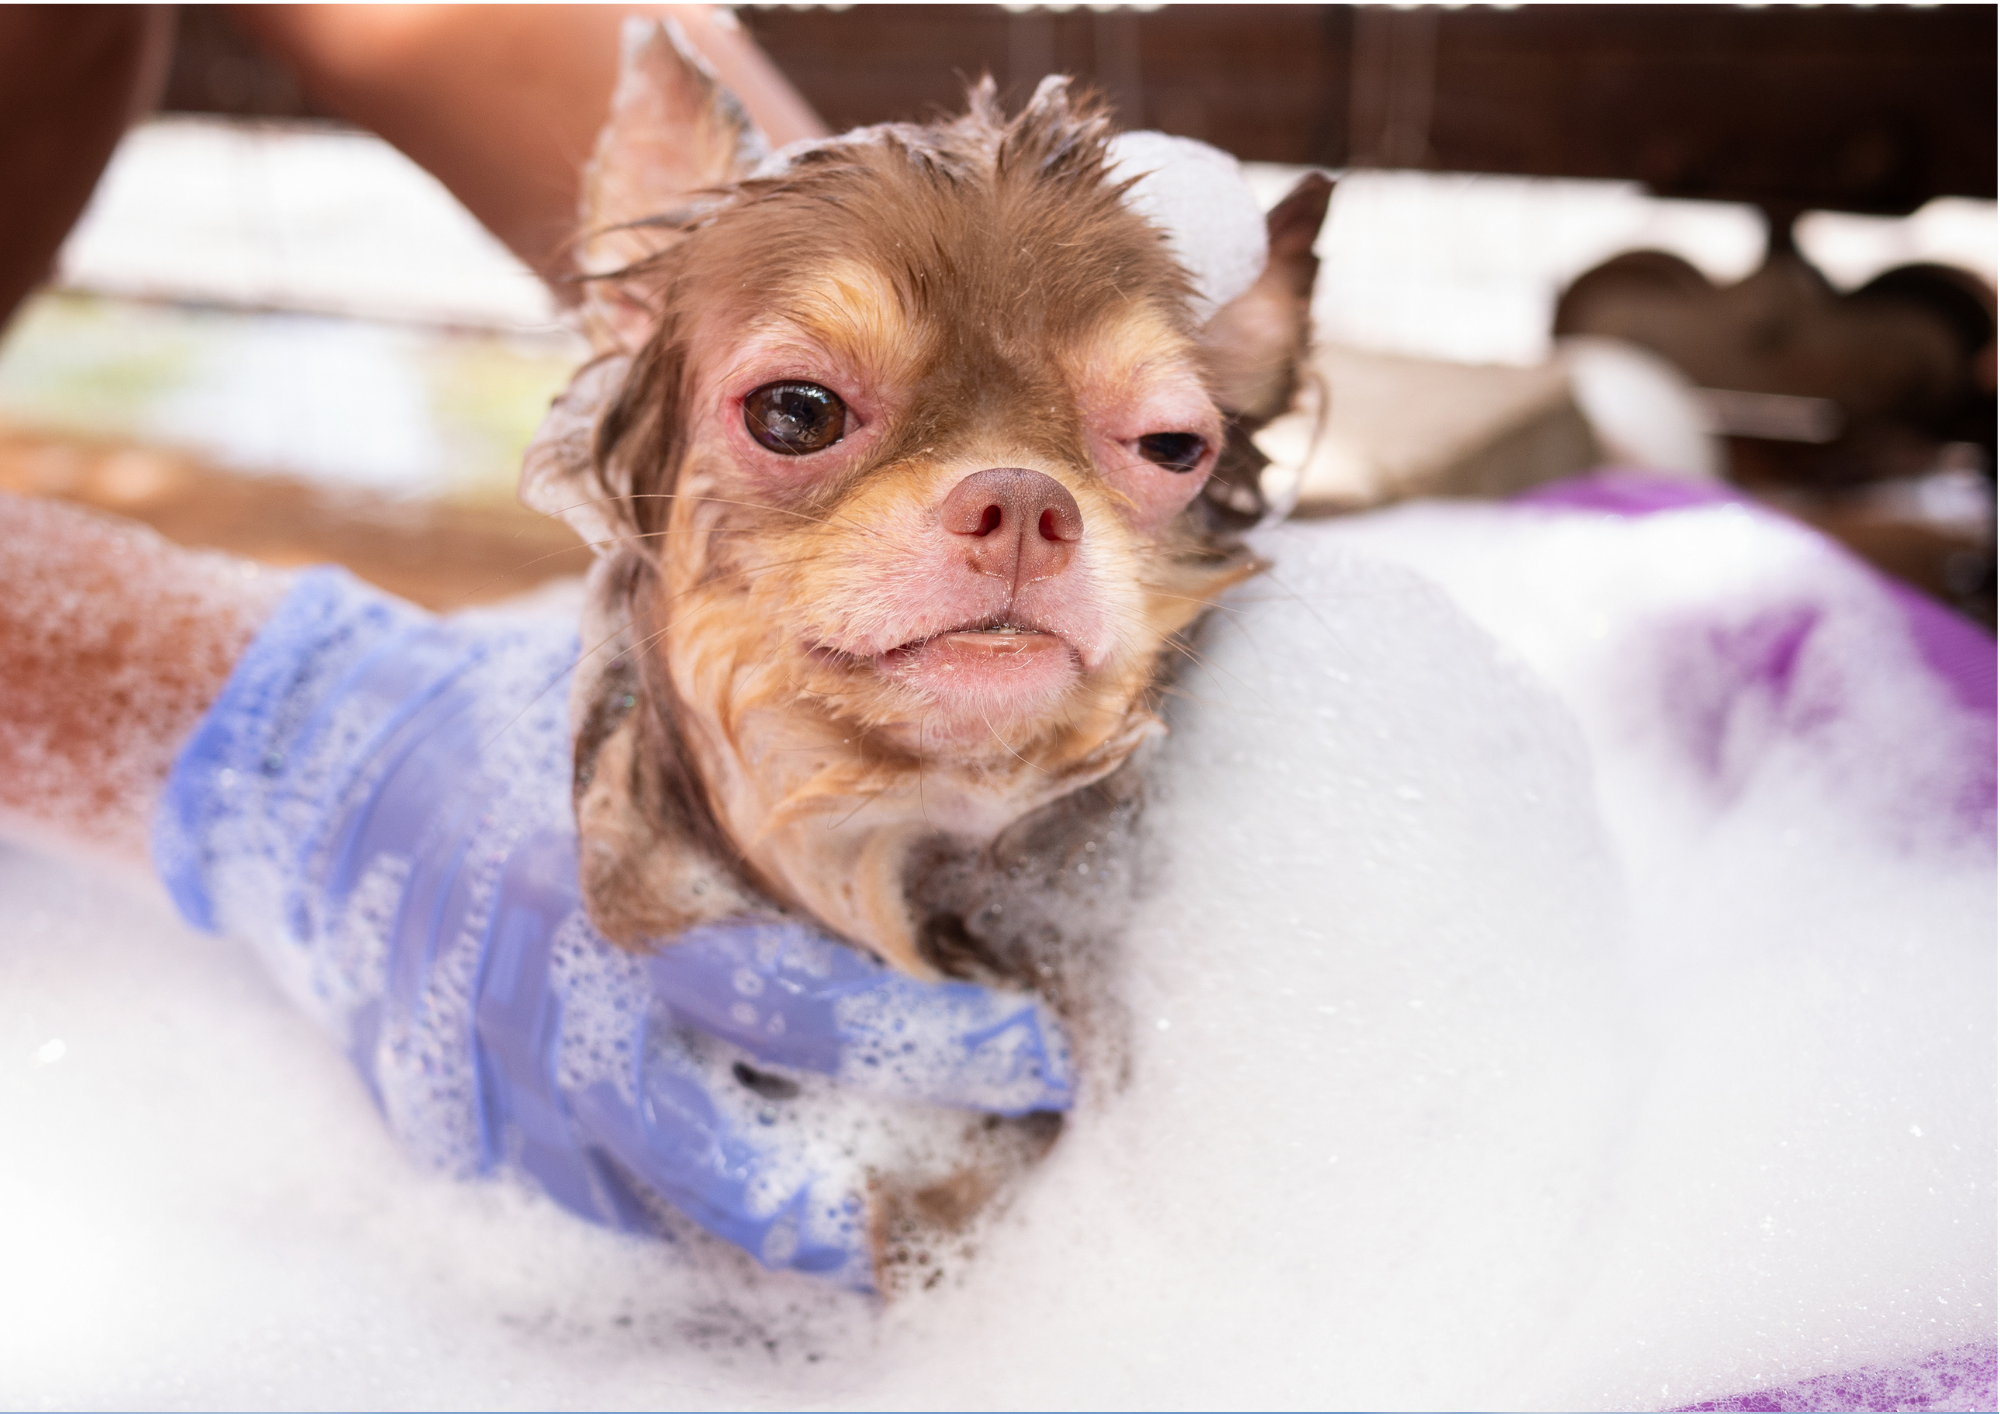 emergency vet care Sunnybank - washing small dog